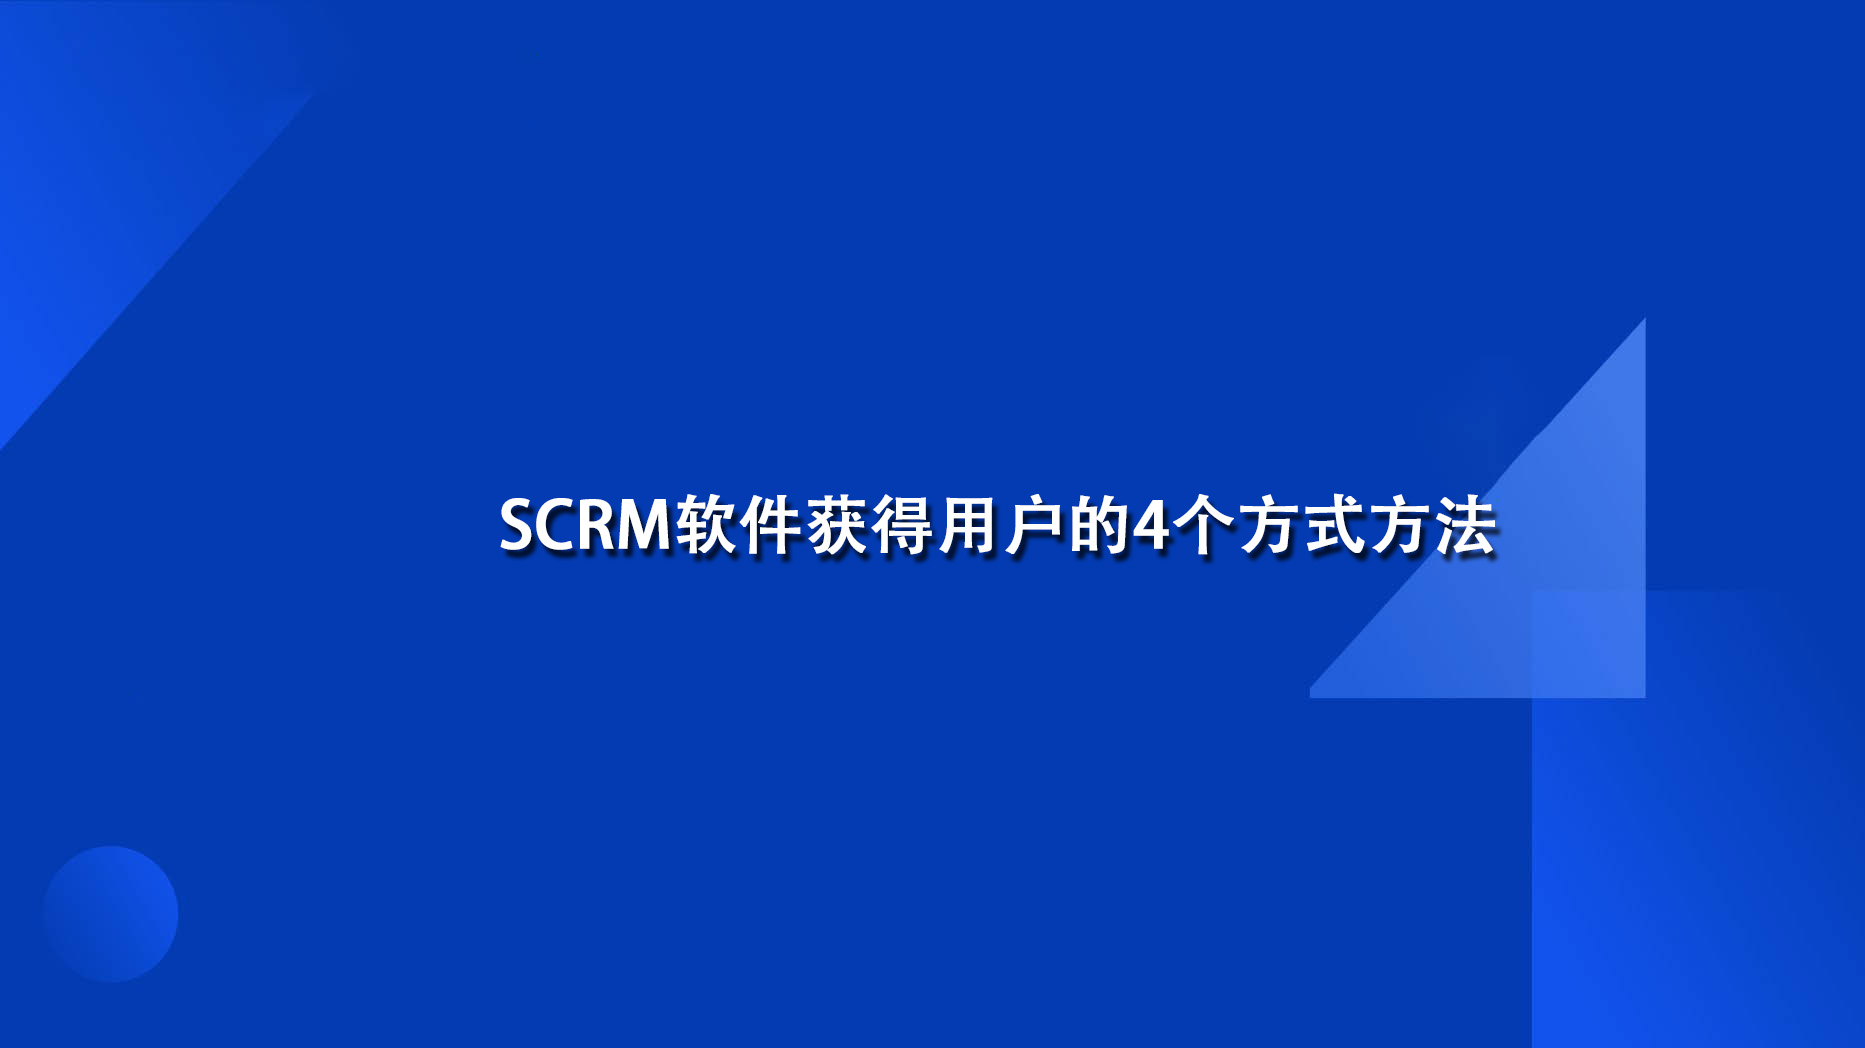 SCRM软件获得用户的4个方式方法(scrm软件是干什么的)